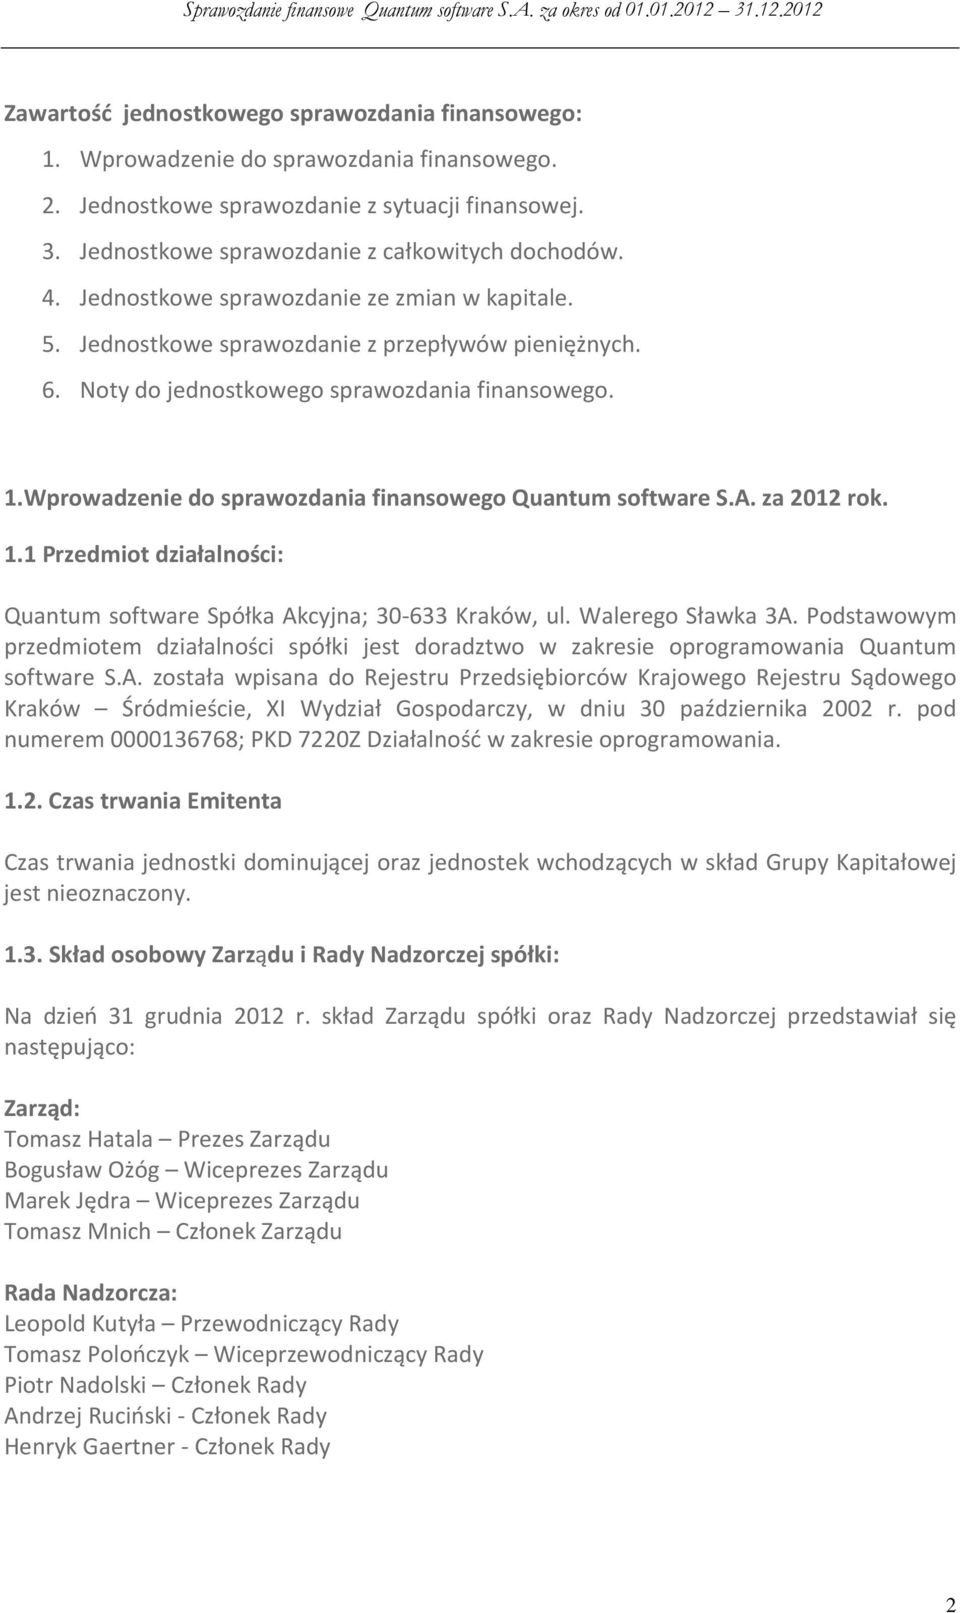 Wprowadzenie do sprawozdania finansowego Quantum software S.A. za 2012 rok. 1.1 Przedmiot działalności: Quantum software Spółka Akcyjna; 30-633 Kraków, ul. Walerego Sławka 3A.